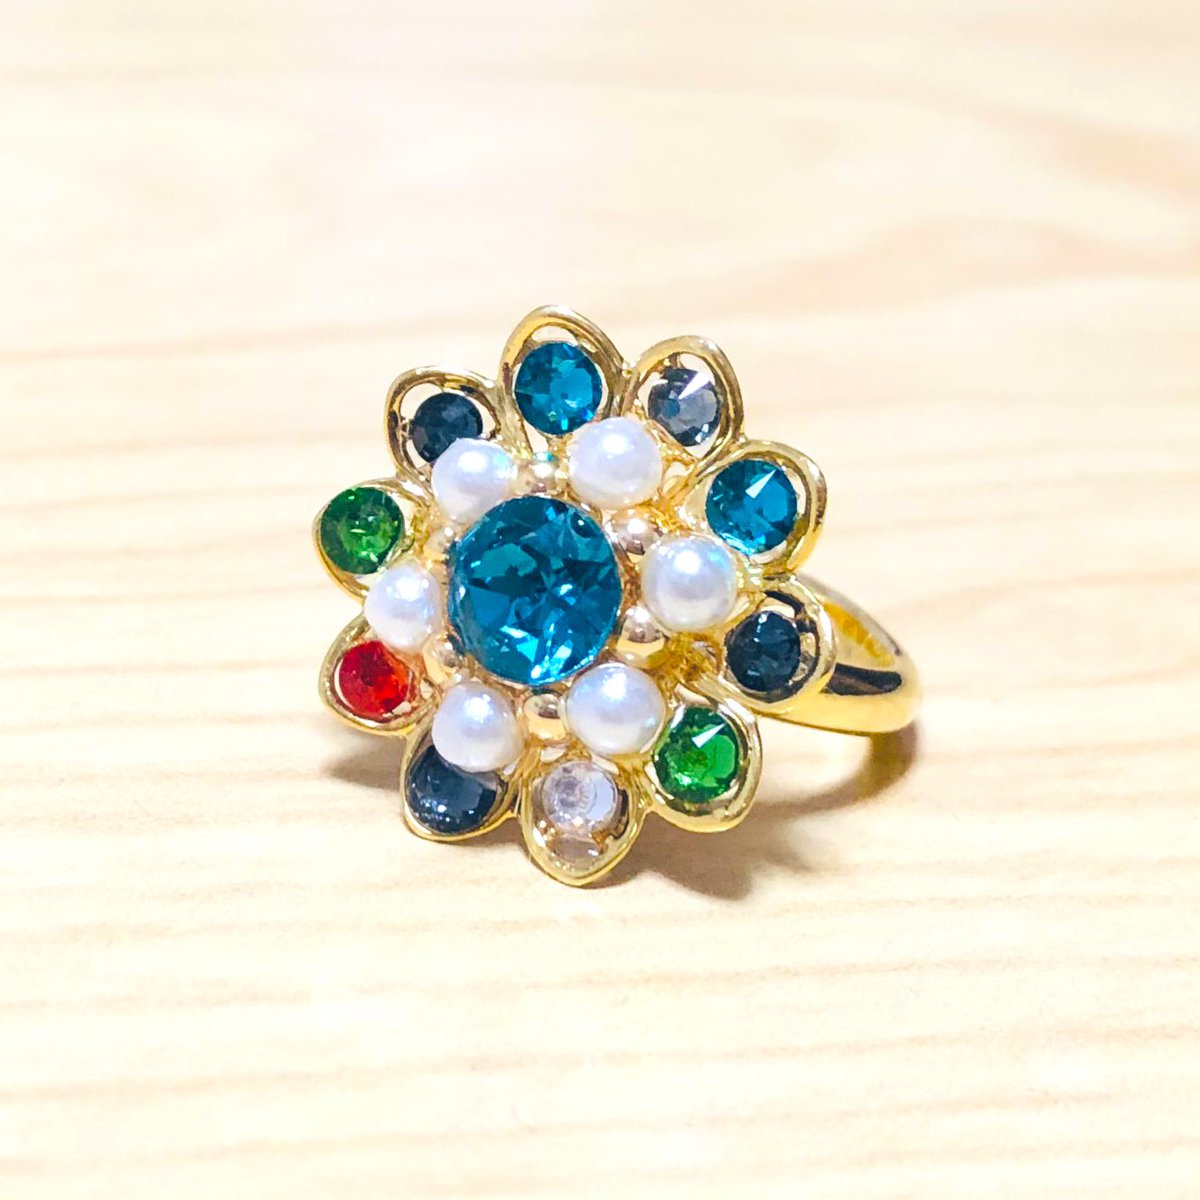 なんと先日、ツナ丸さん(@seachicken_can)の江リングプレゼント企画に当選しました‼️🎁 青が綺麗な松井くんカラーの指輪をいただきました🥰💍💕 光にあてるとこれまたすっっっごく綺麗に光るんです…!!
指輪はMY本丸の松井くんにお守りとして装備させたいと思います…🙏🌸 